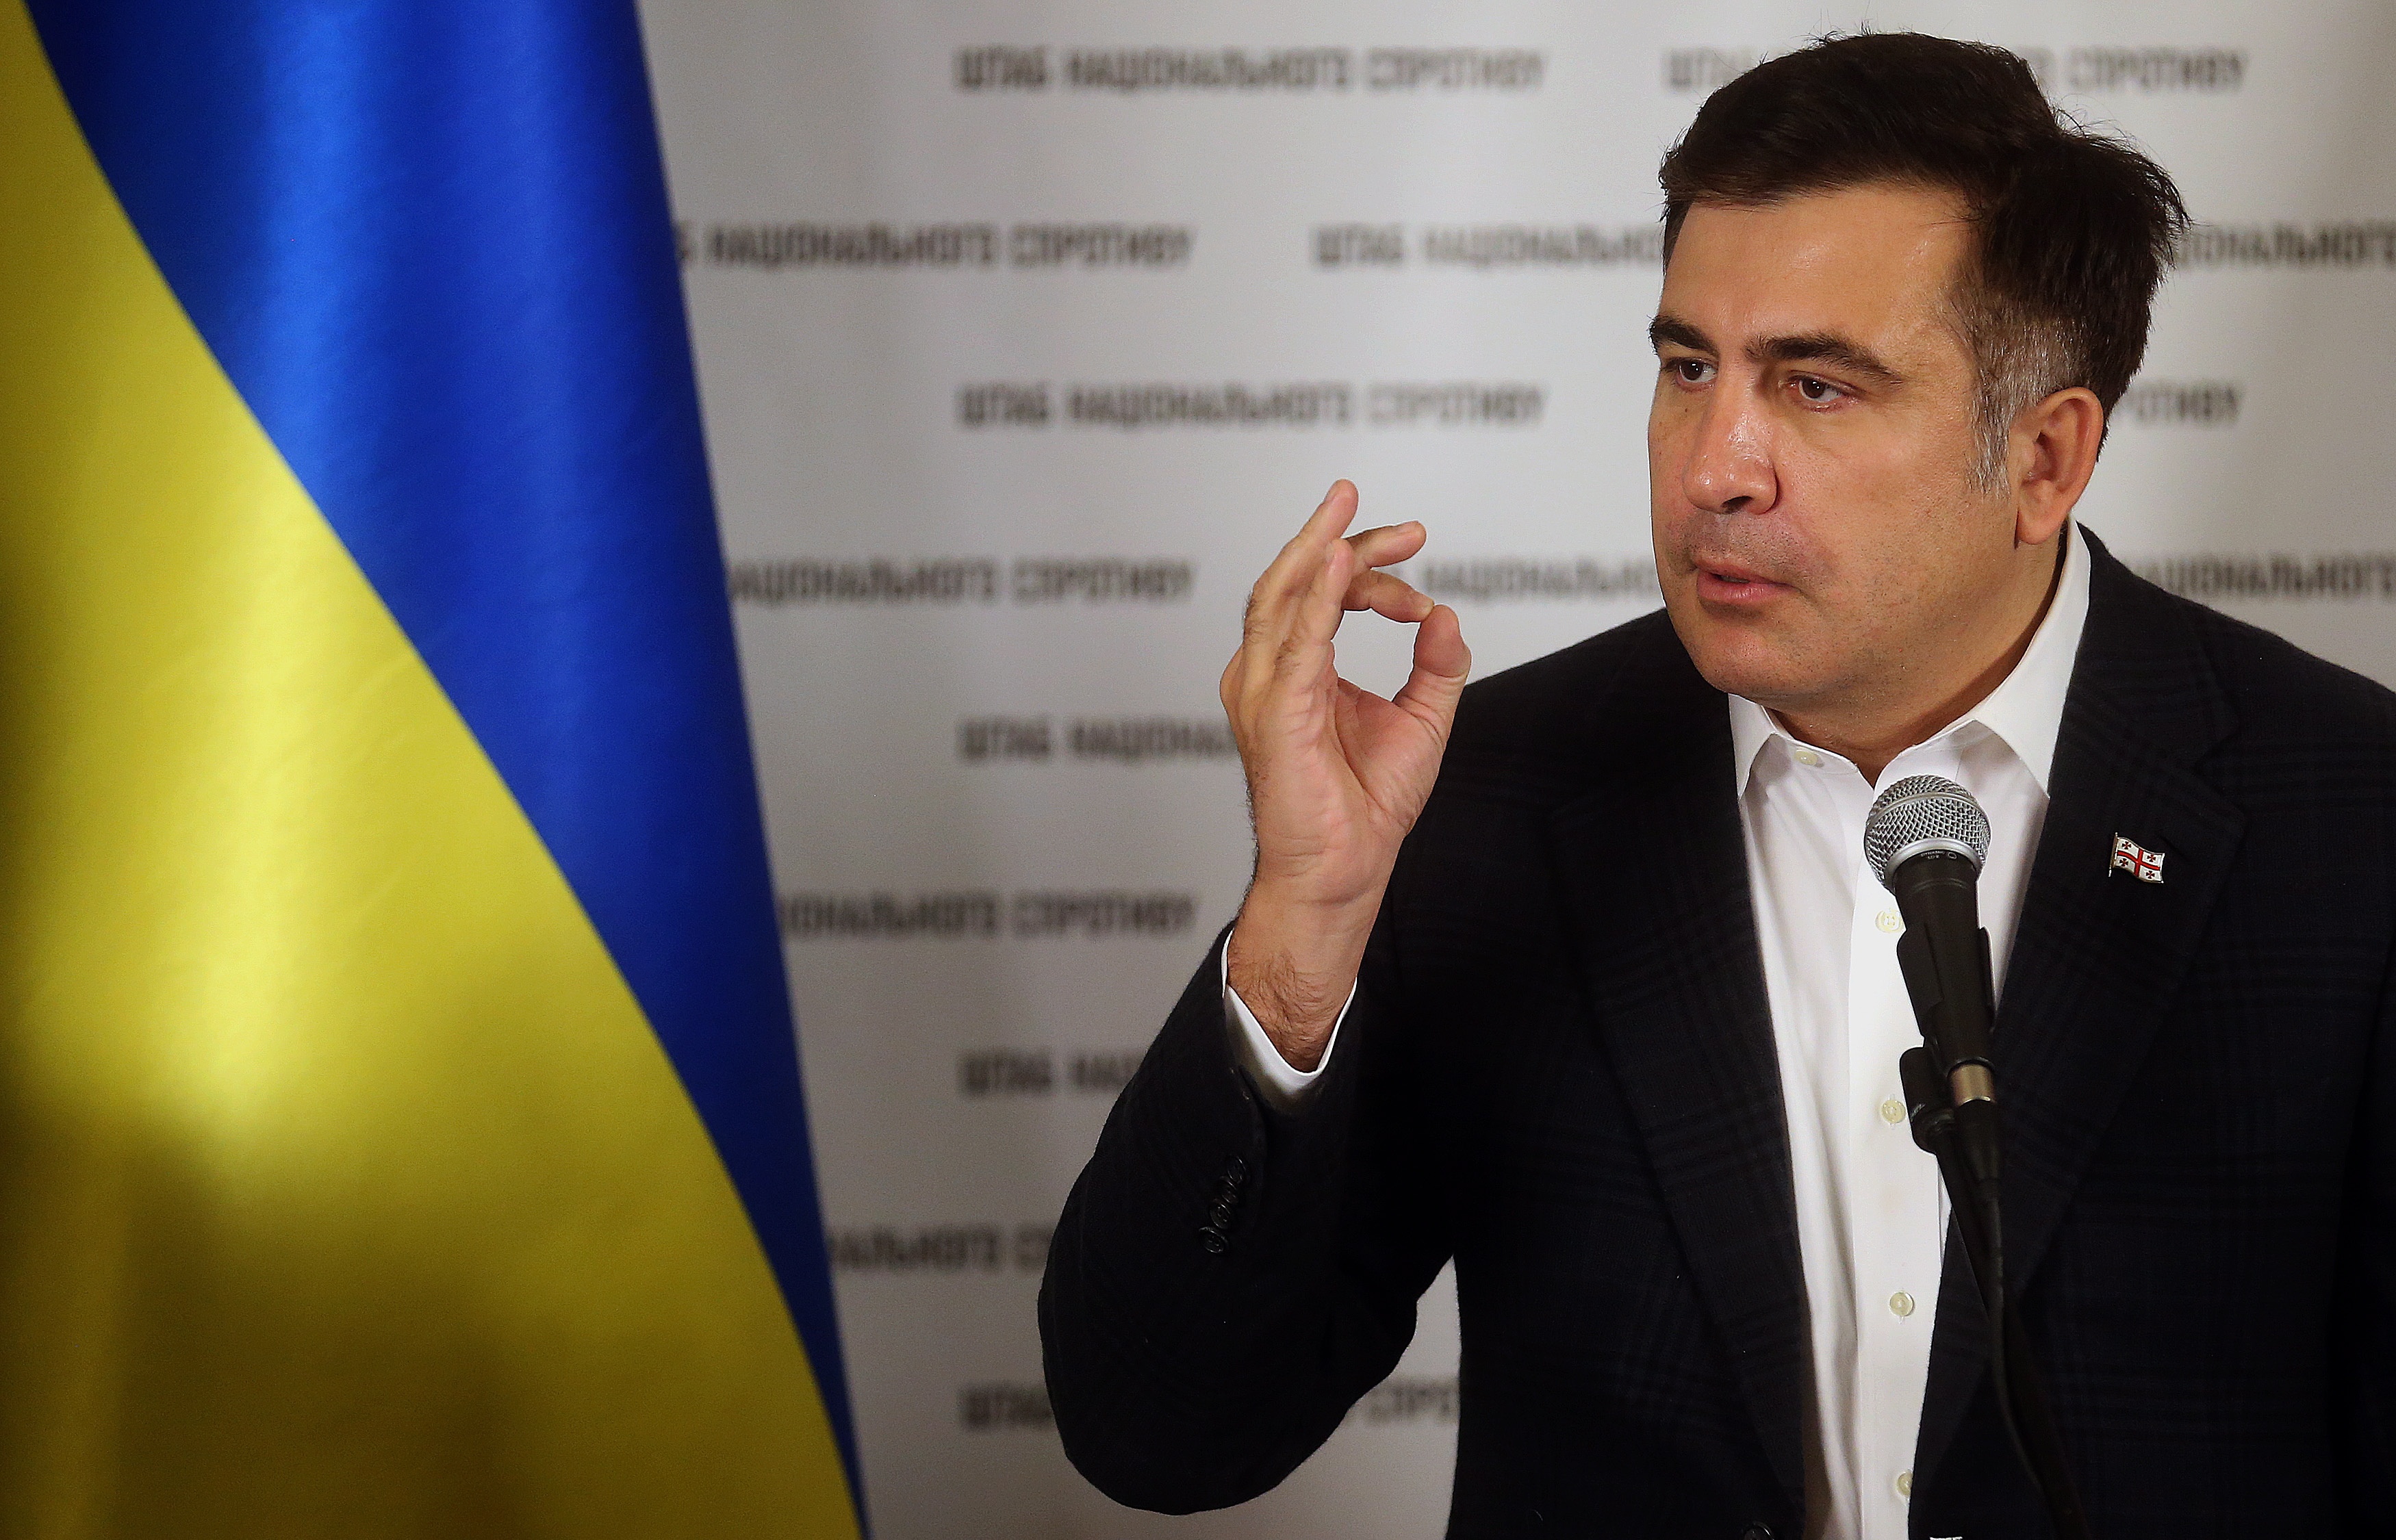 Саакашвили показал, что губернатор может прекратить хотя бы мелкую коррупцию, — Березюк